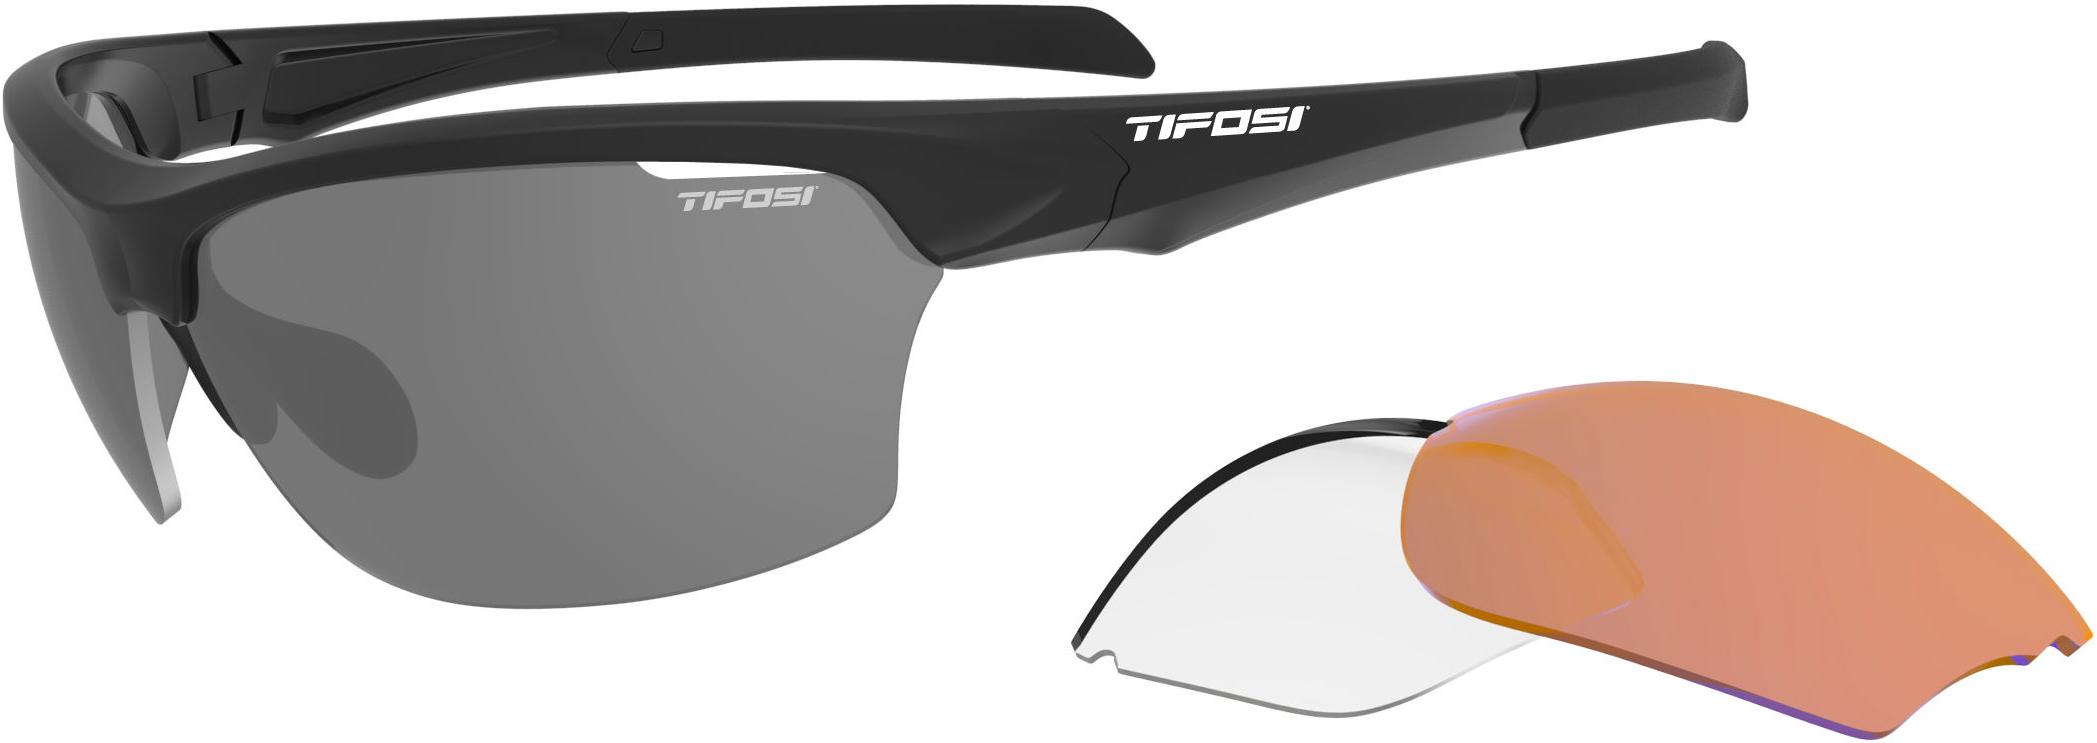 Tifosi Eyewear Intense Triple Lens - Black